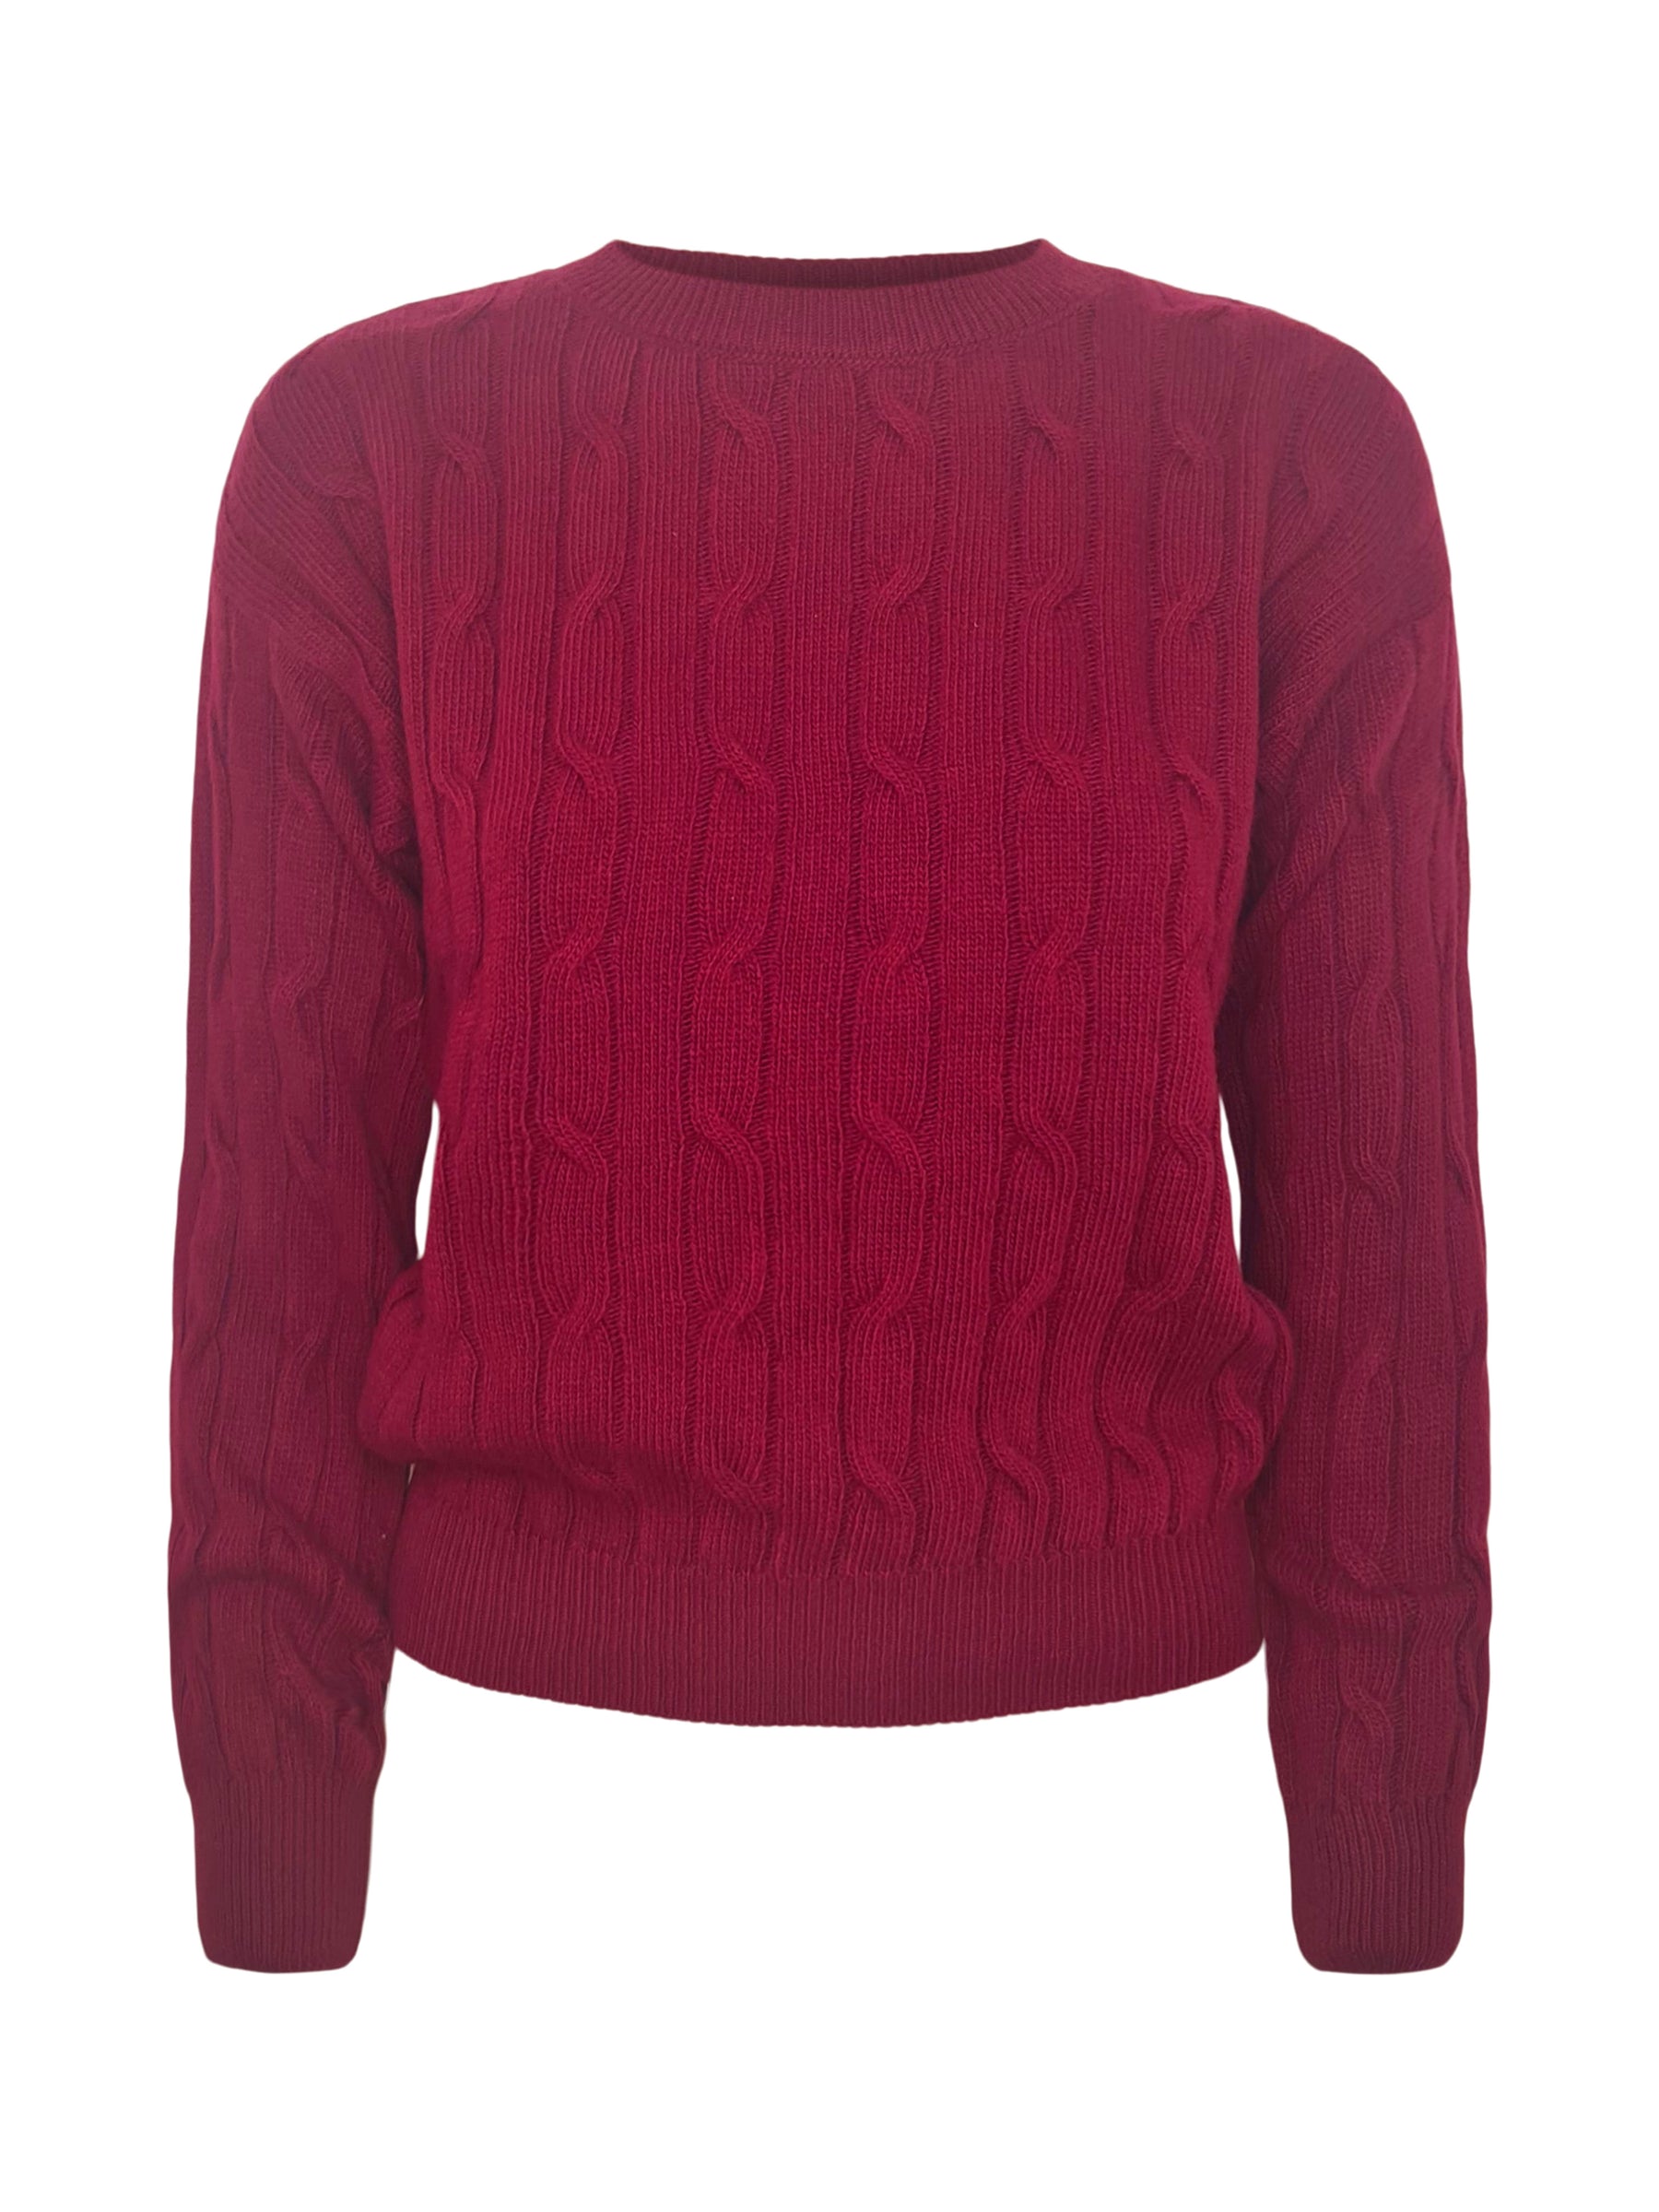 Agata Aspen Trecce Sweater